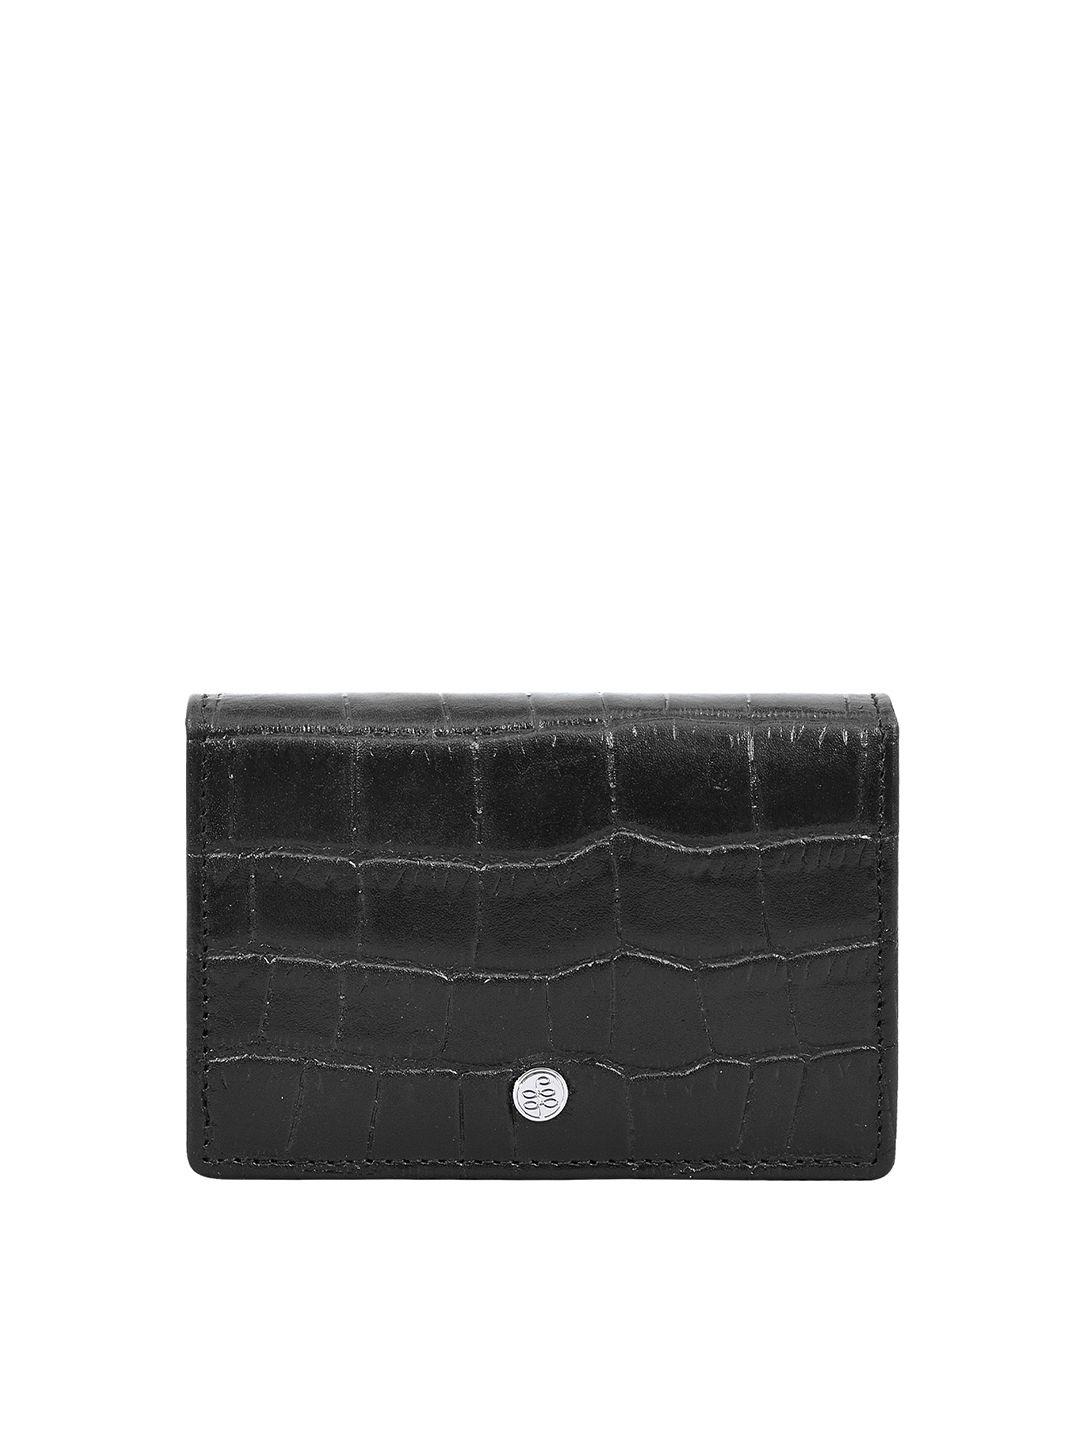 eske unisex black animal textured leather card holder